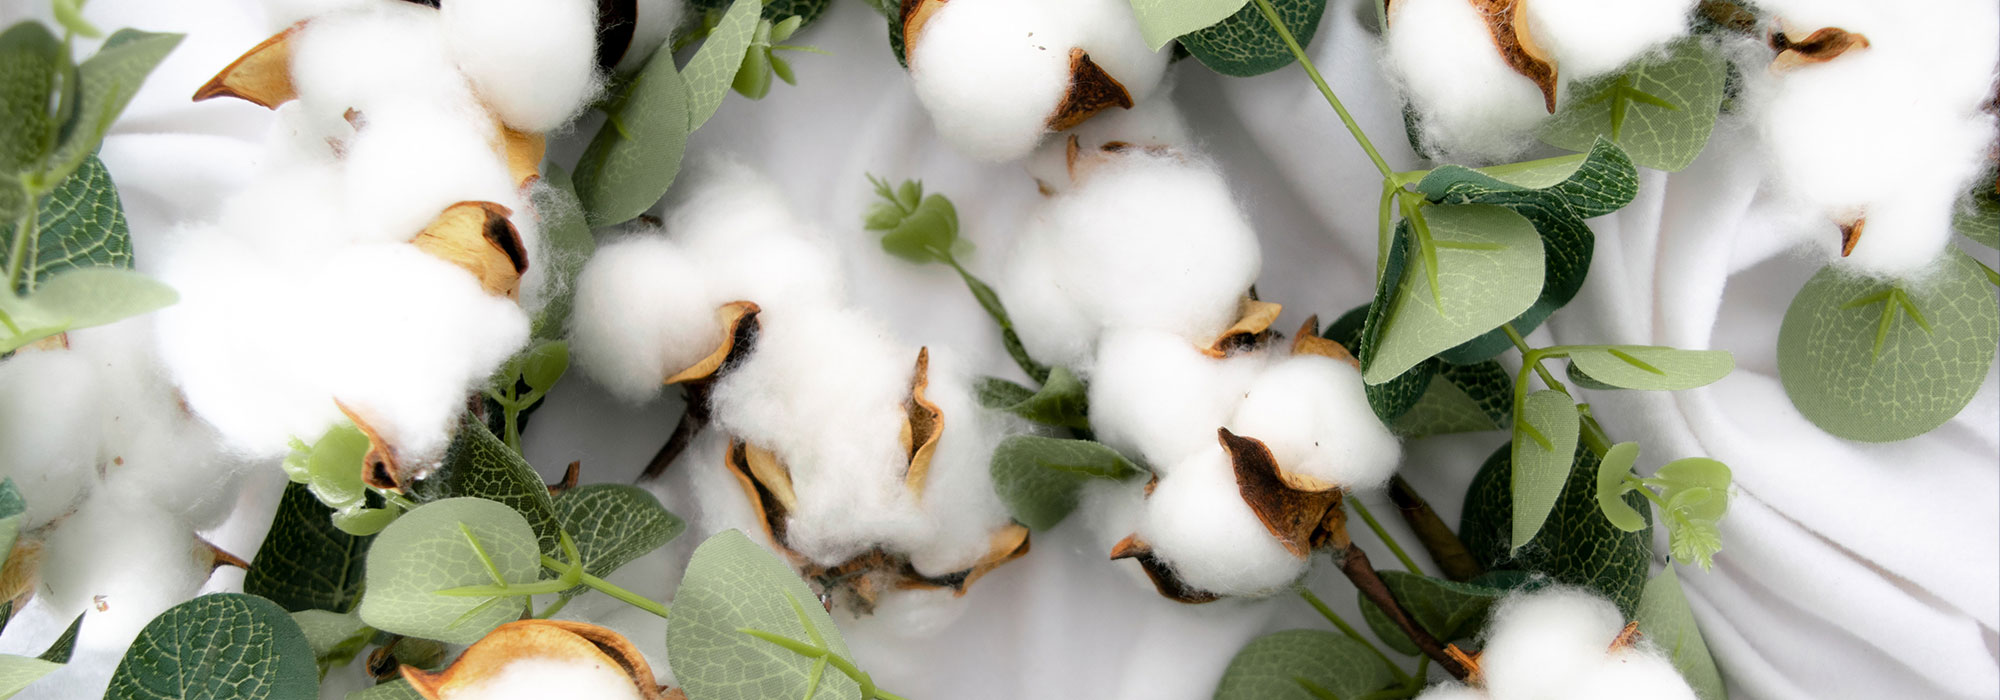 O algodão em conversão: junto para um futuro sustentável